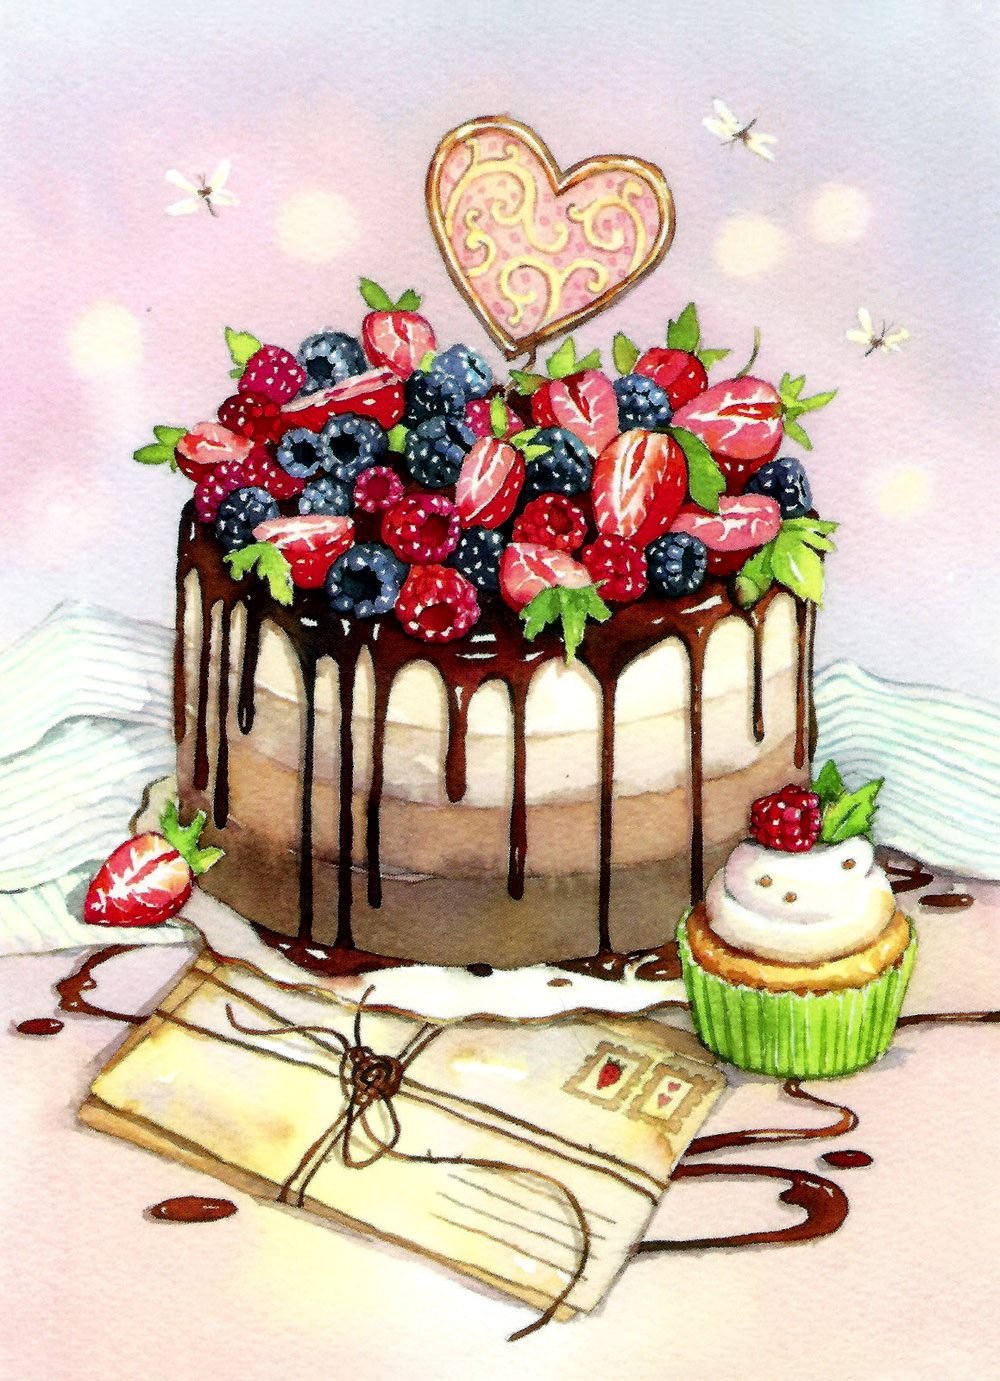 Открытка 4 шоколадки «С днём рождения» (торт) заказать с доставкой в Краснодаре по цене руб.